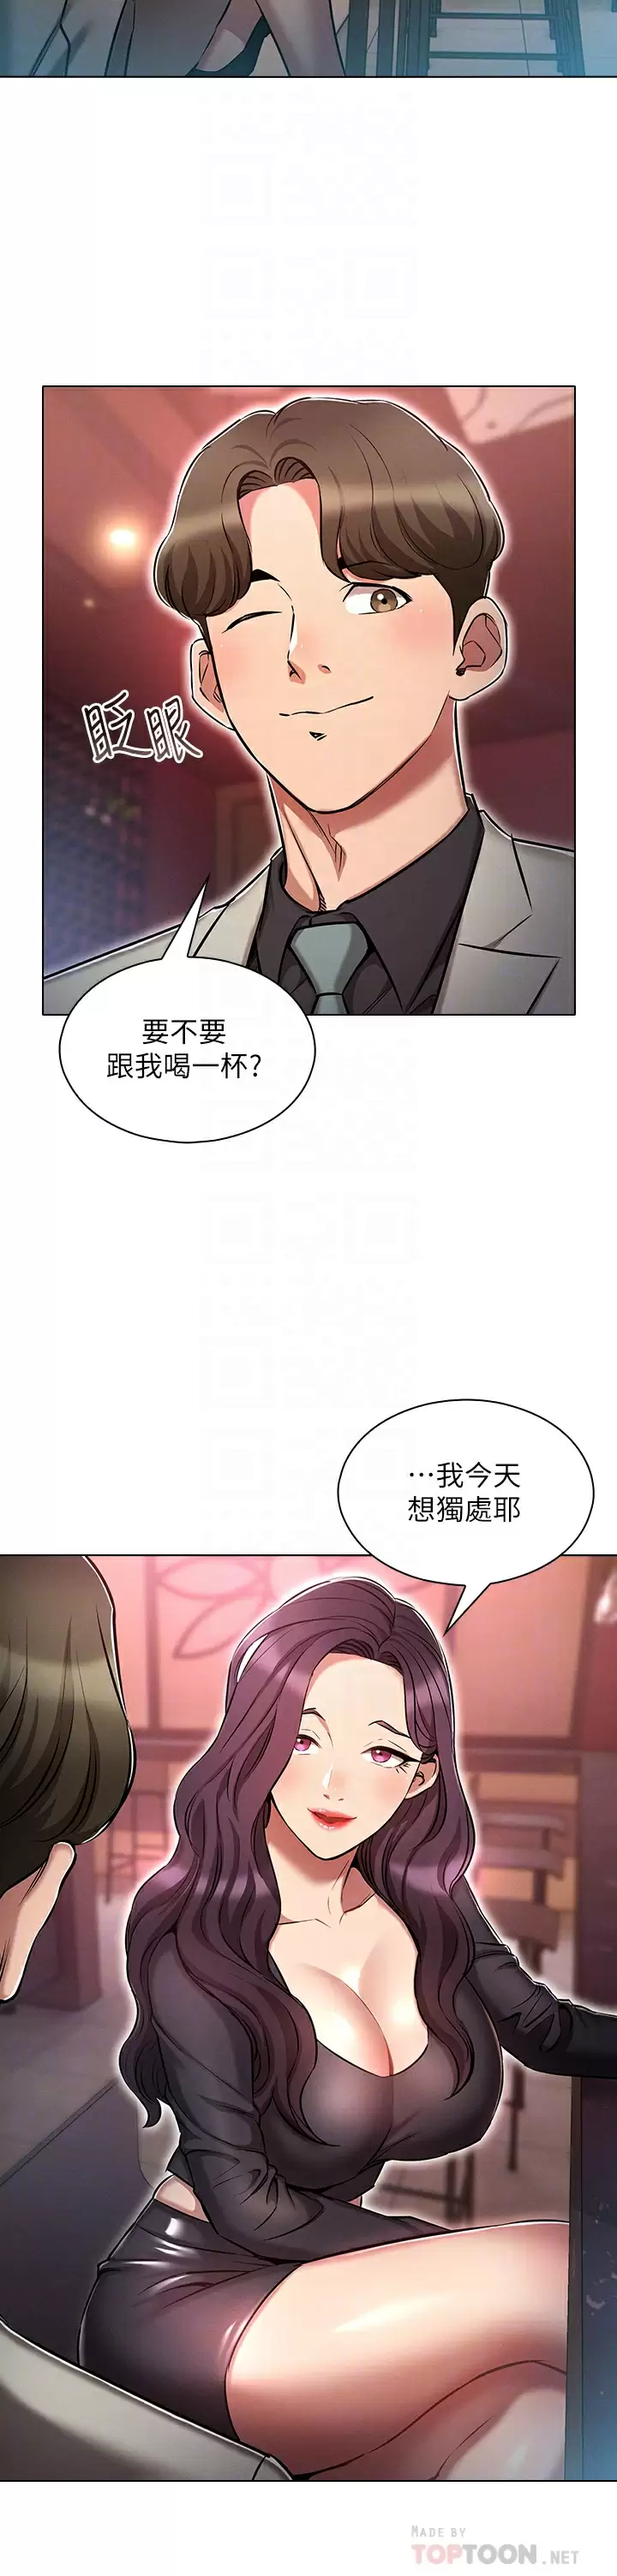 韩国污漫画 魯蛇的多重宇宙 第16话 销魂的脚上功夫 6